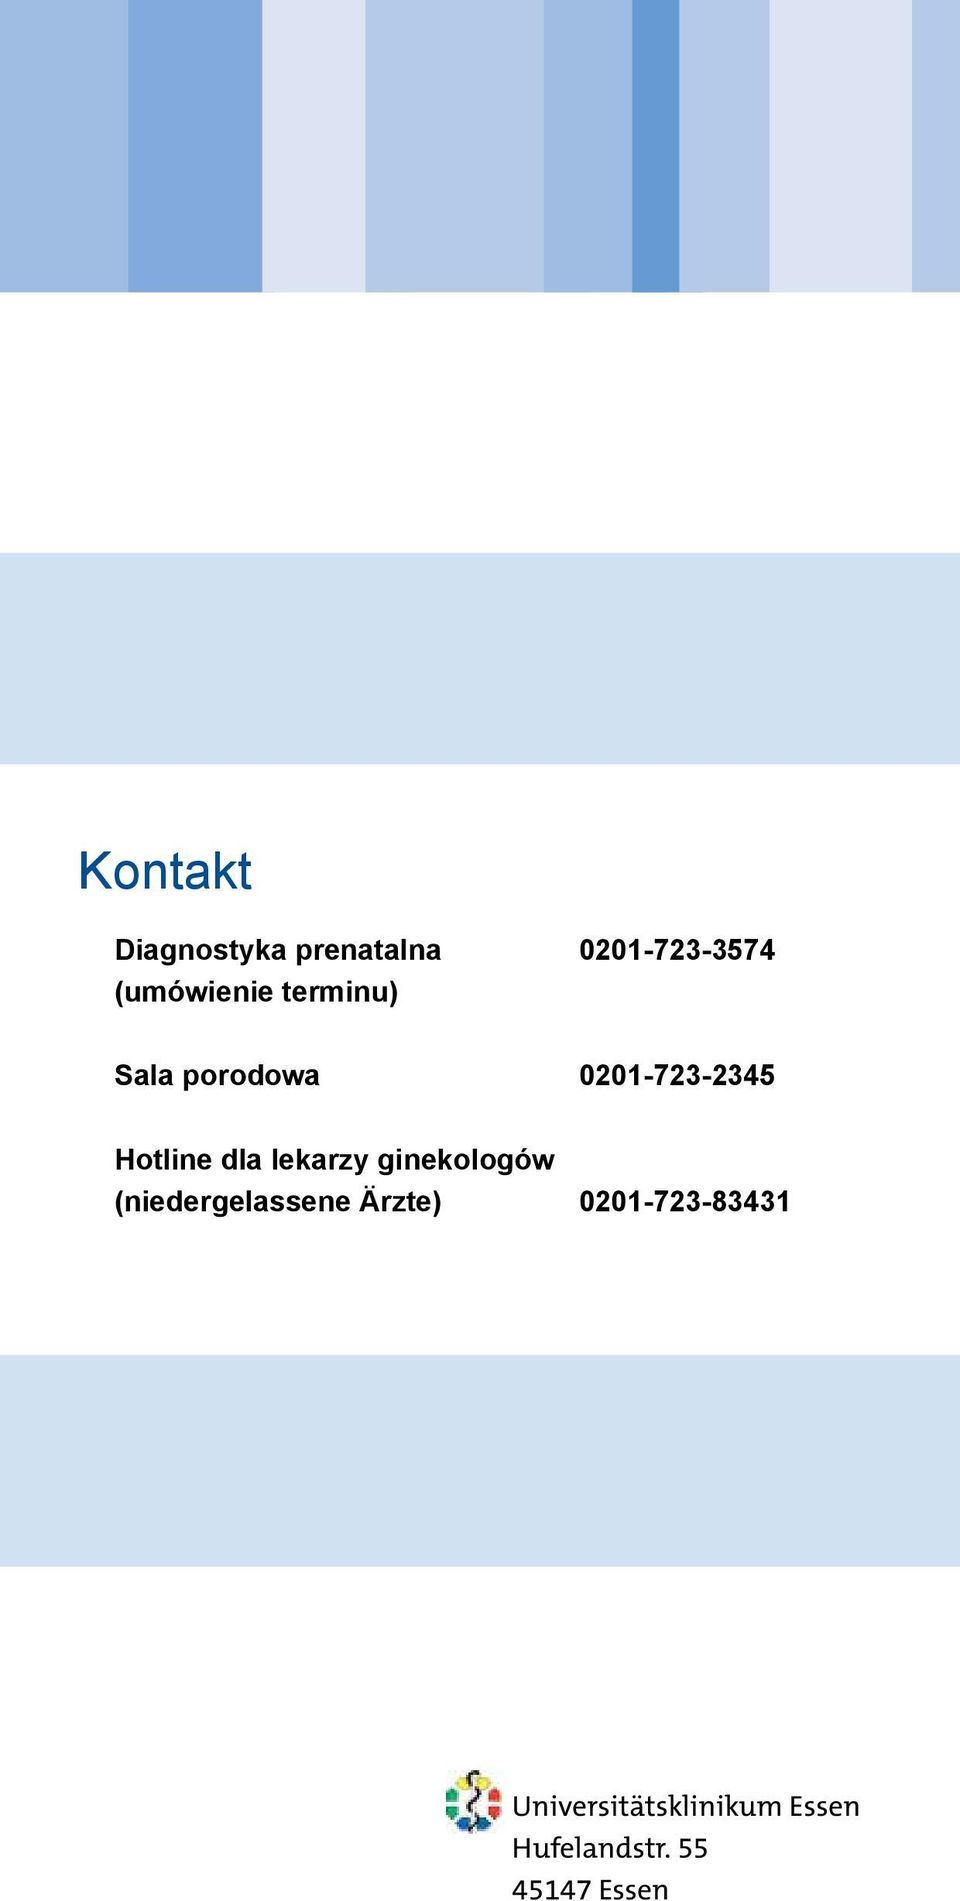 Hotline dla lekarzy ginekologów (niedergelassene